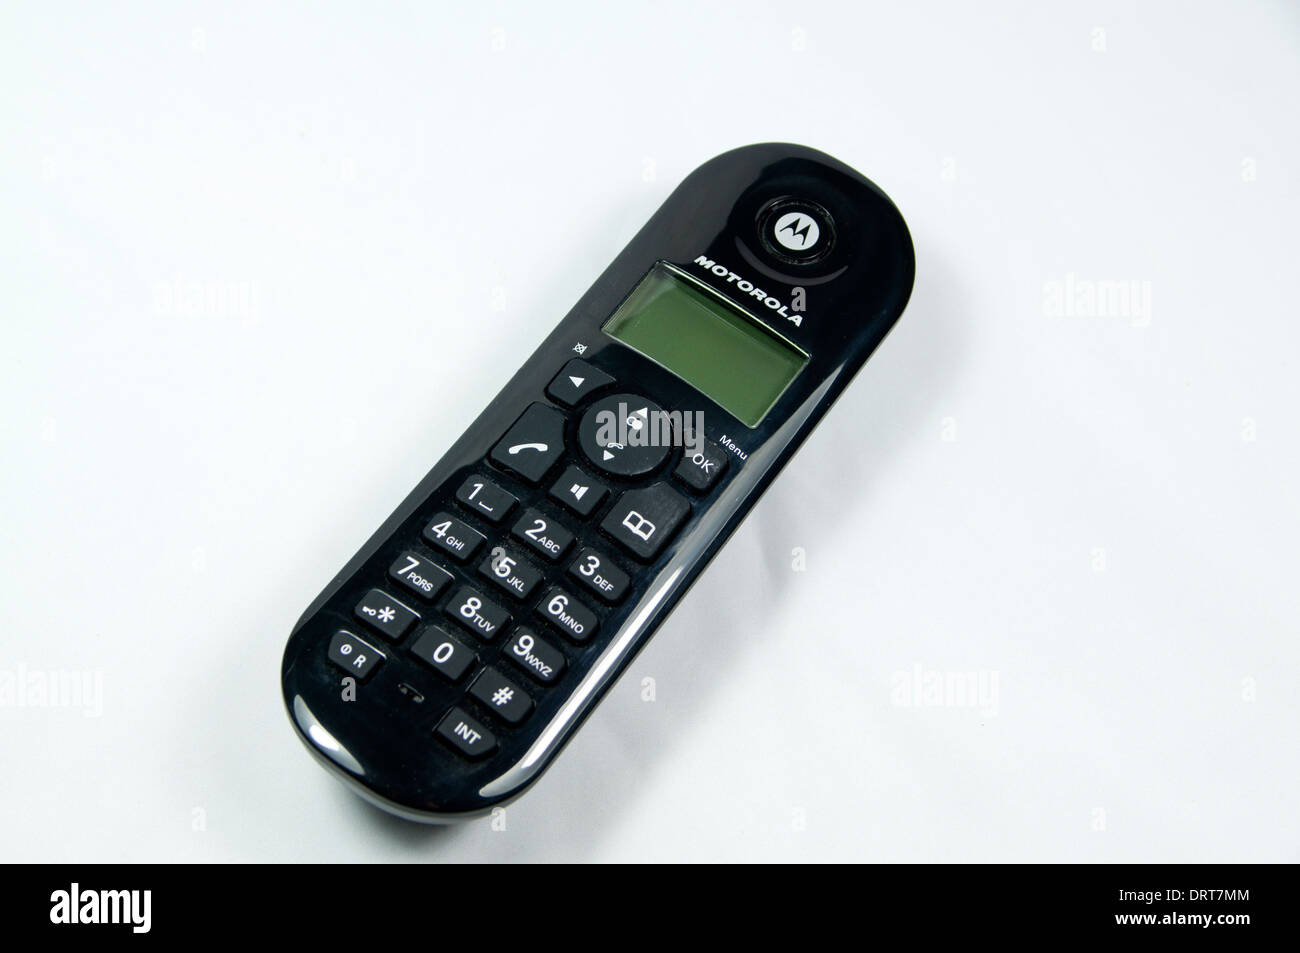 Motorola Festnetz Telefon Stockfotografie - Alamy